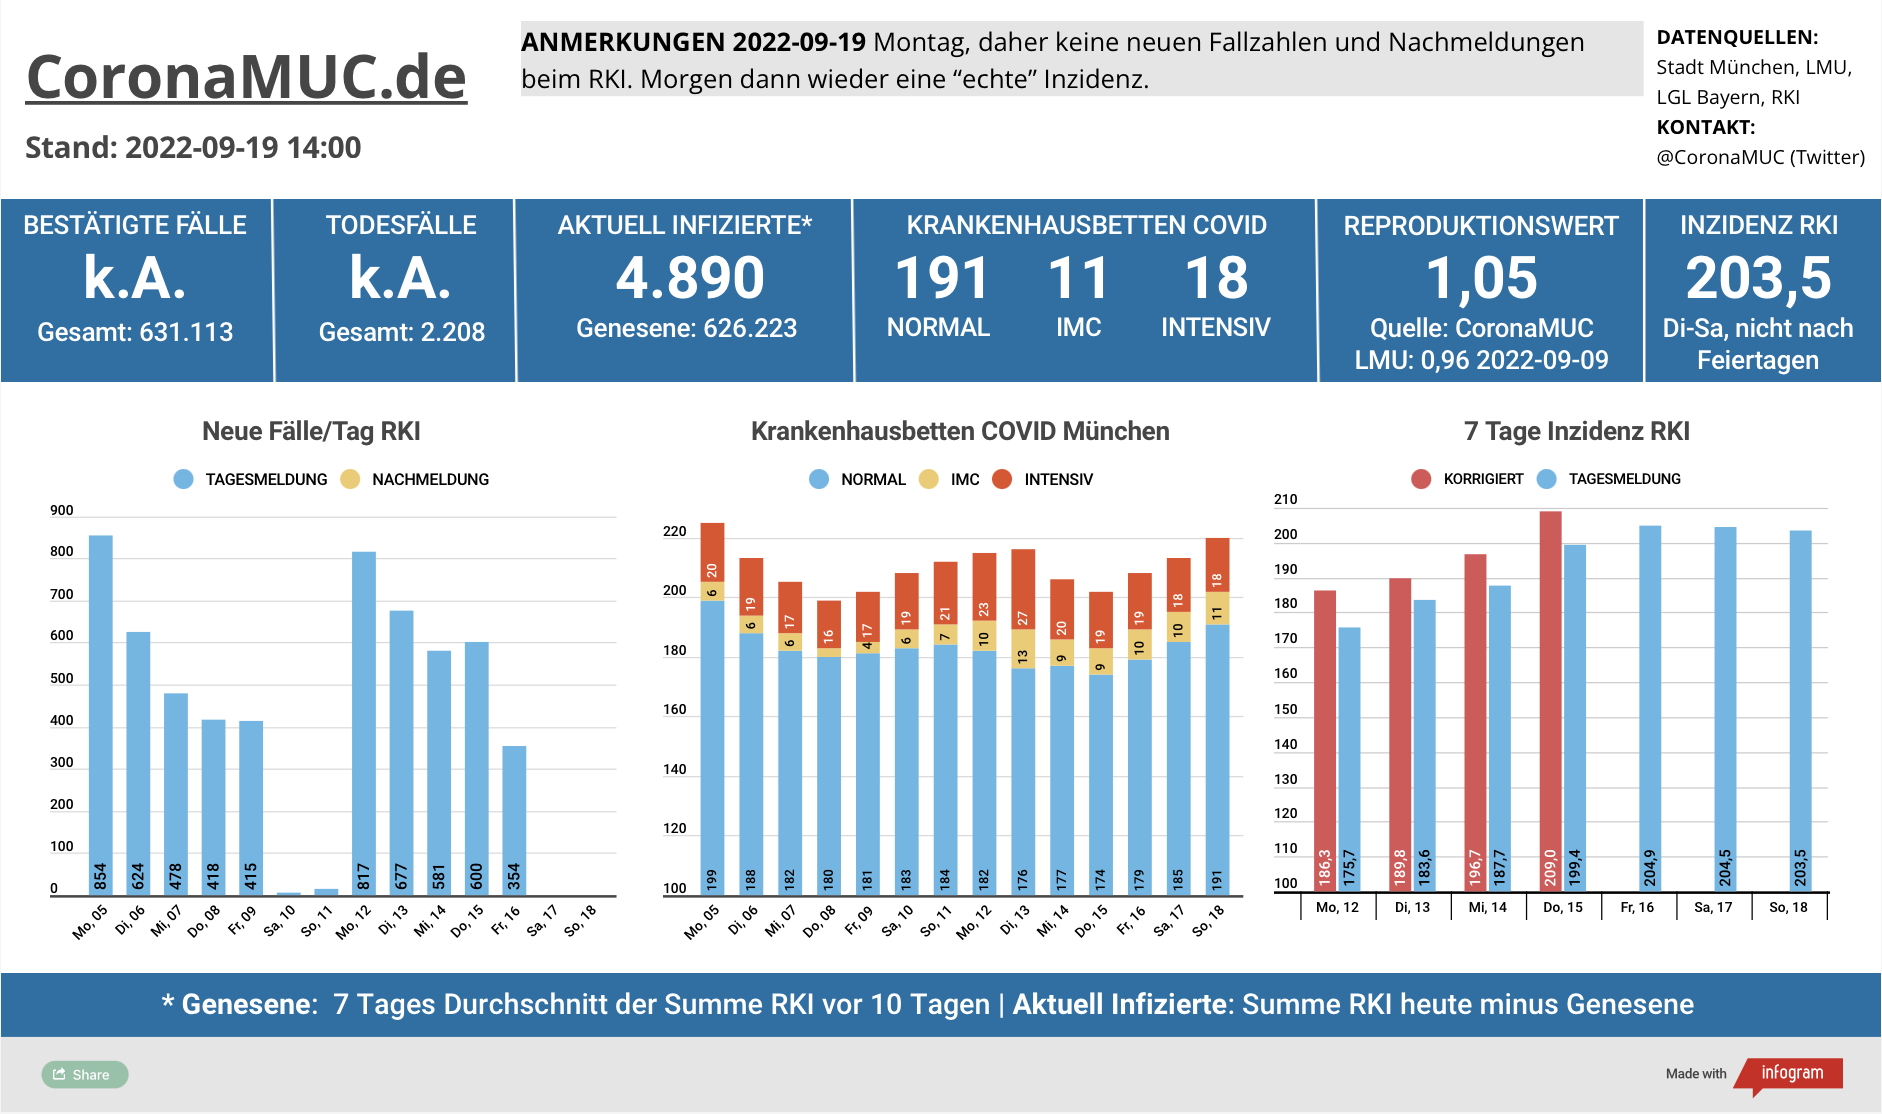 2022-09-19 Dashboard mit den Zahlen für München. Drei Balkengrafiken. Erste zeigt Neu- und Nachmeldungen, im Vergleich zur Vorwoche leichte Aufwärtstendenz. Zweite zeigt Krankenbetten, klare Steigung, insbesondere bei den Normalbetten. Dritte zeigt Inzidenz, die jetzt wieder stabil über 200 ist.